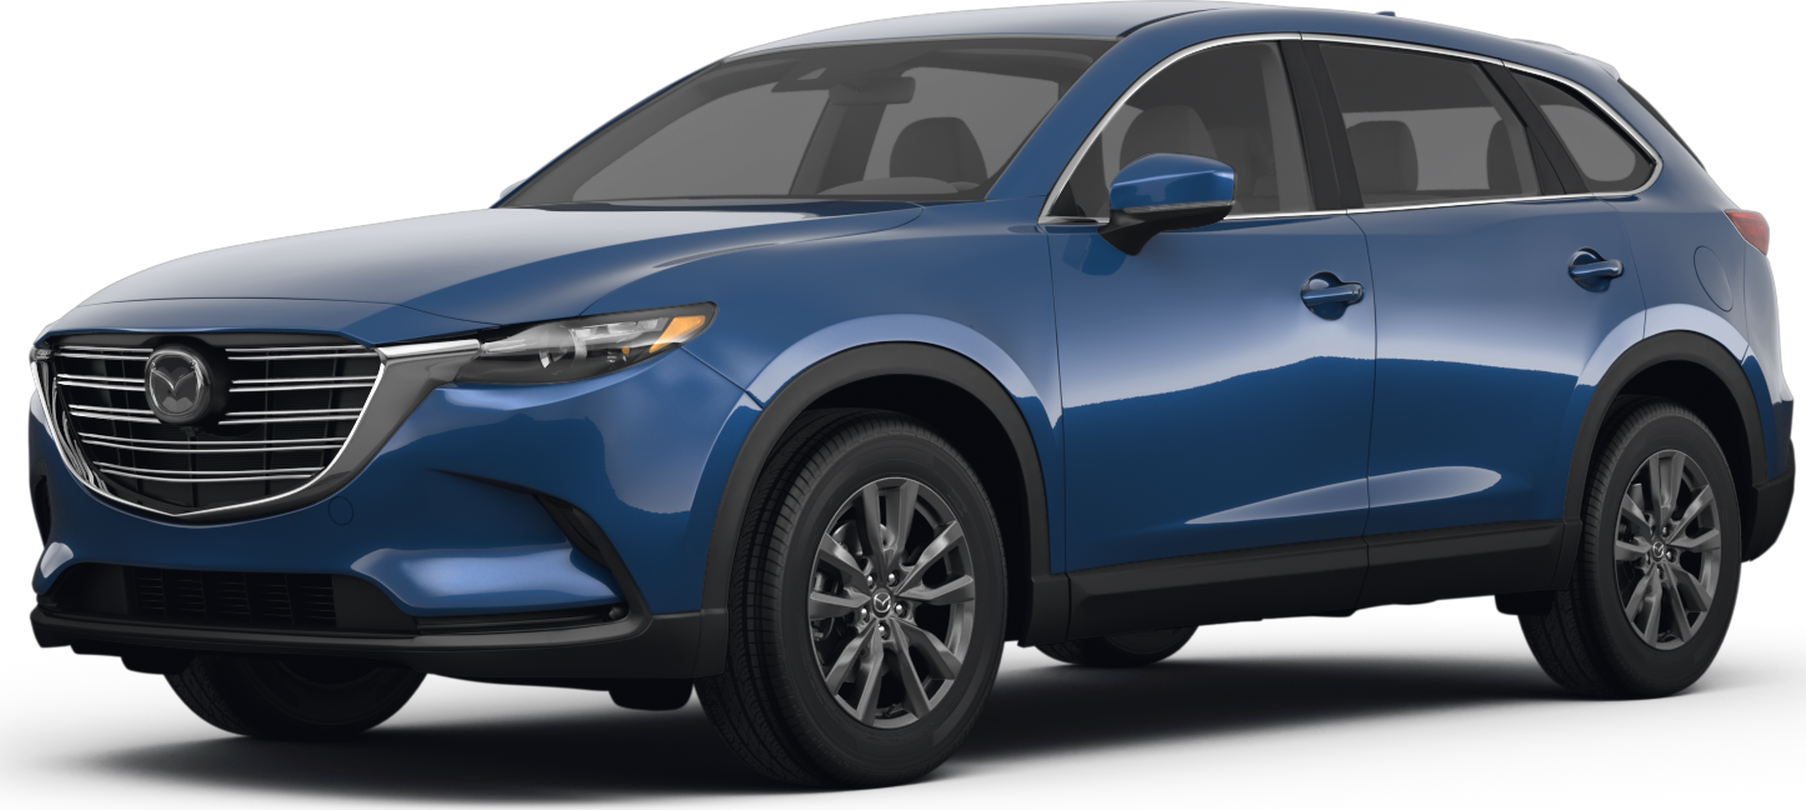 Mazda CX9 2017 sẽ chính thức bán tại Việt Nam trong thời gian tới   MuasamXecom